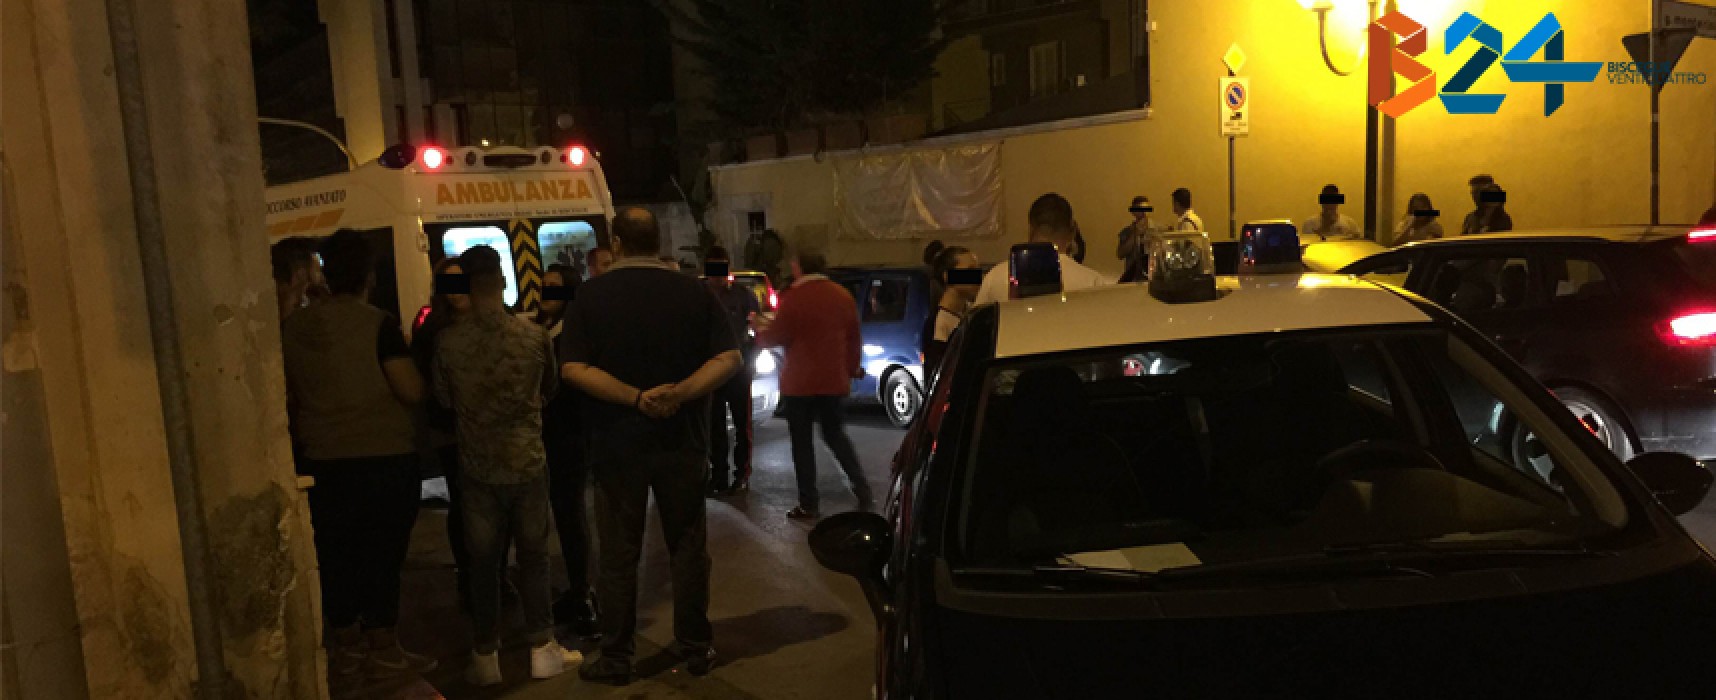 Giovane semina il panico tra le vie del centro fino alla rissa sedata dai carabinieri / FOTO